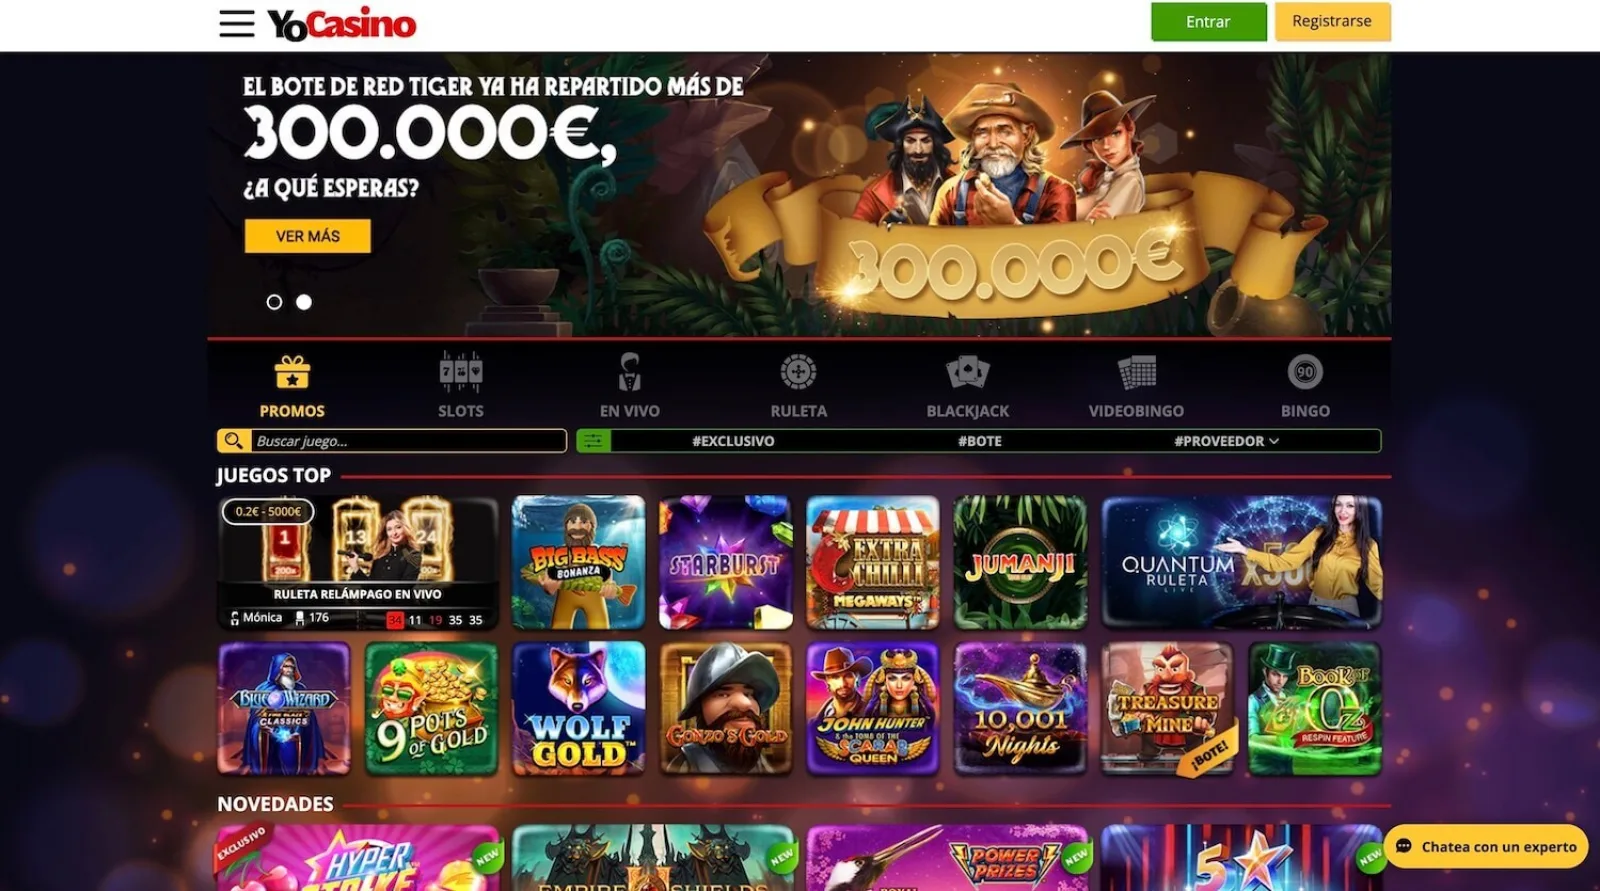 YoCasino Casino Online Espana